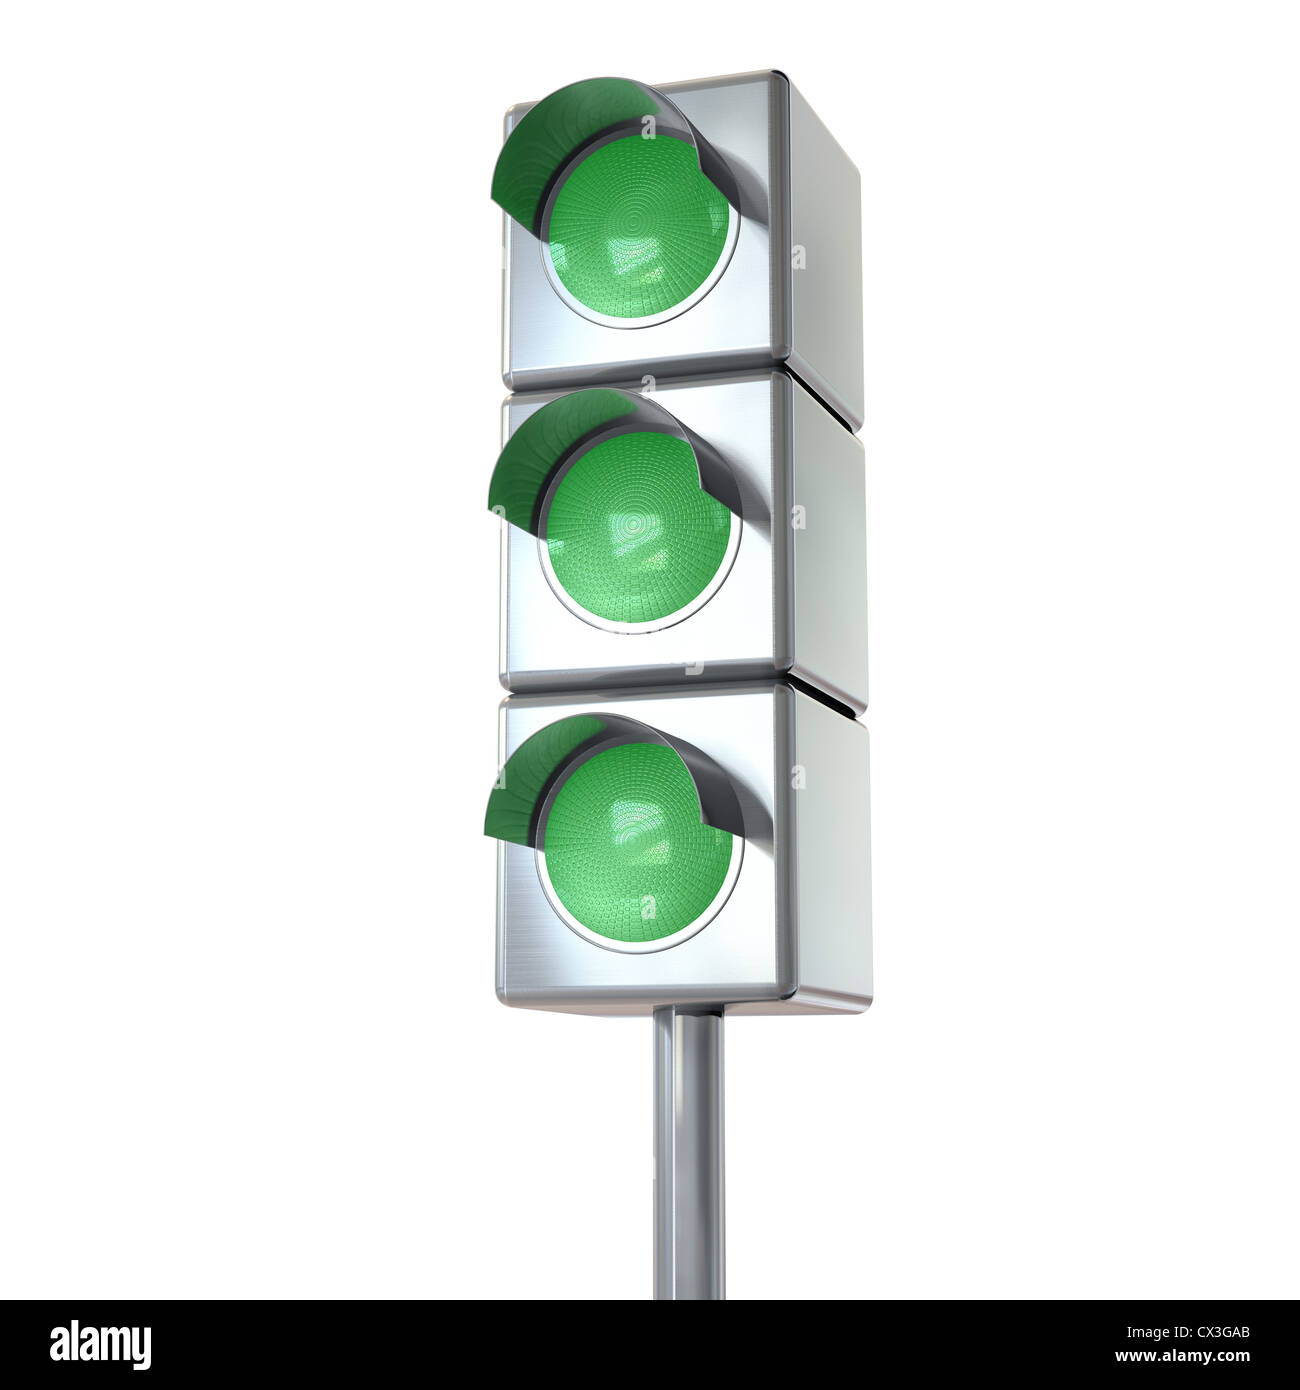 Nachberufliche Mit 3 Grünen Lichtern Auf Weiß - leuchtet grün auf weißem Grund Stockfoto